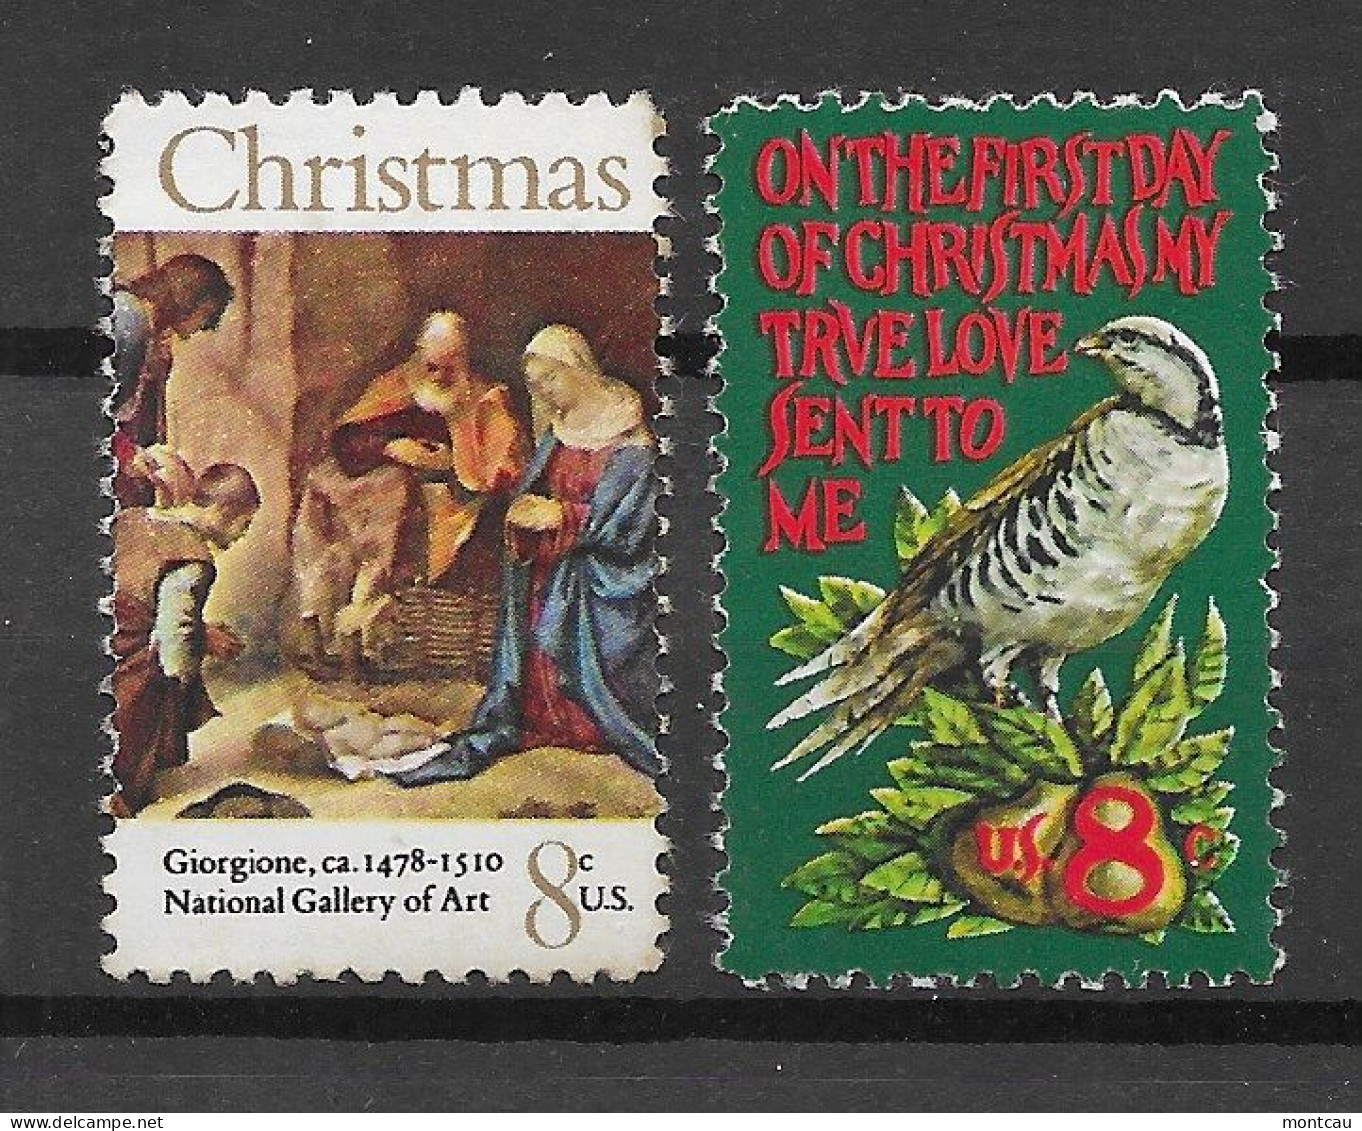 USA 1971.  Christmas Sc 1444-45  (**) - Unused Stamps